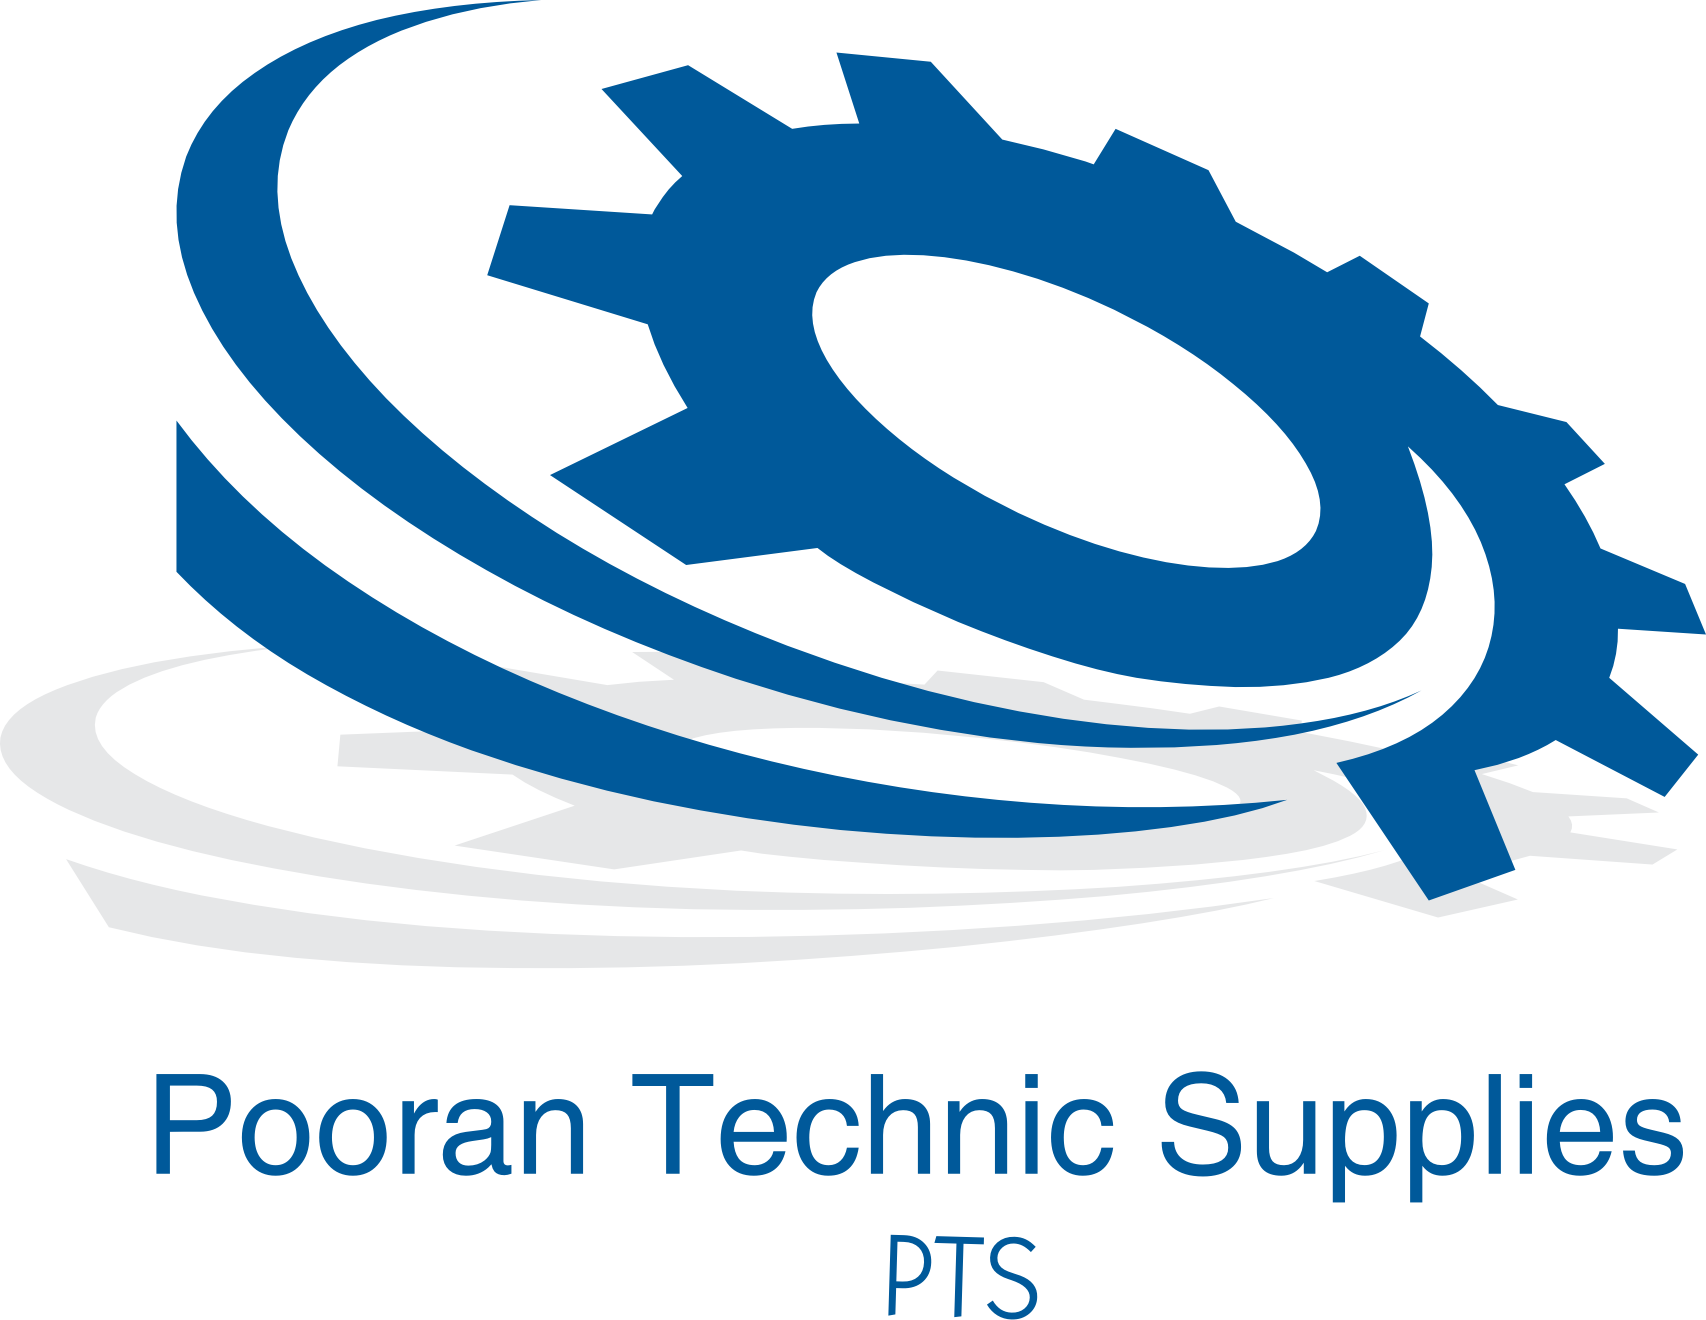 Pooran Technic Supplies